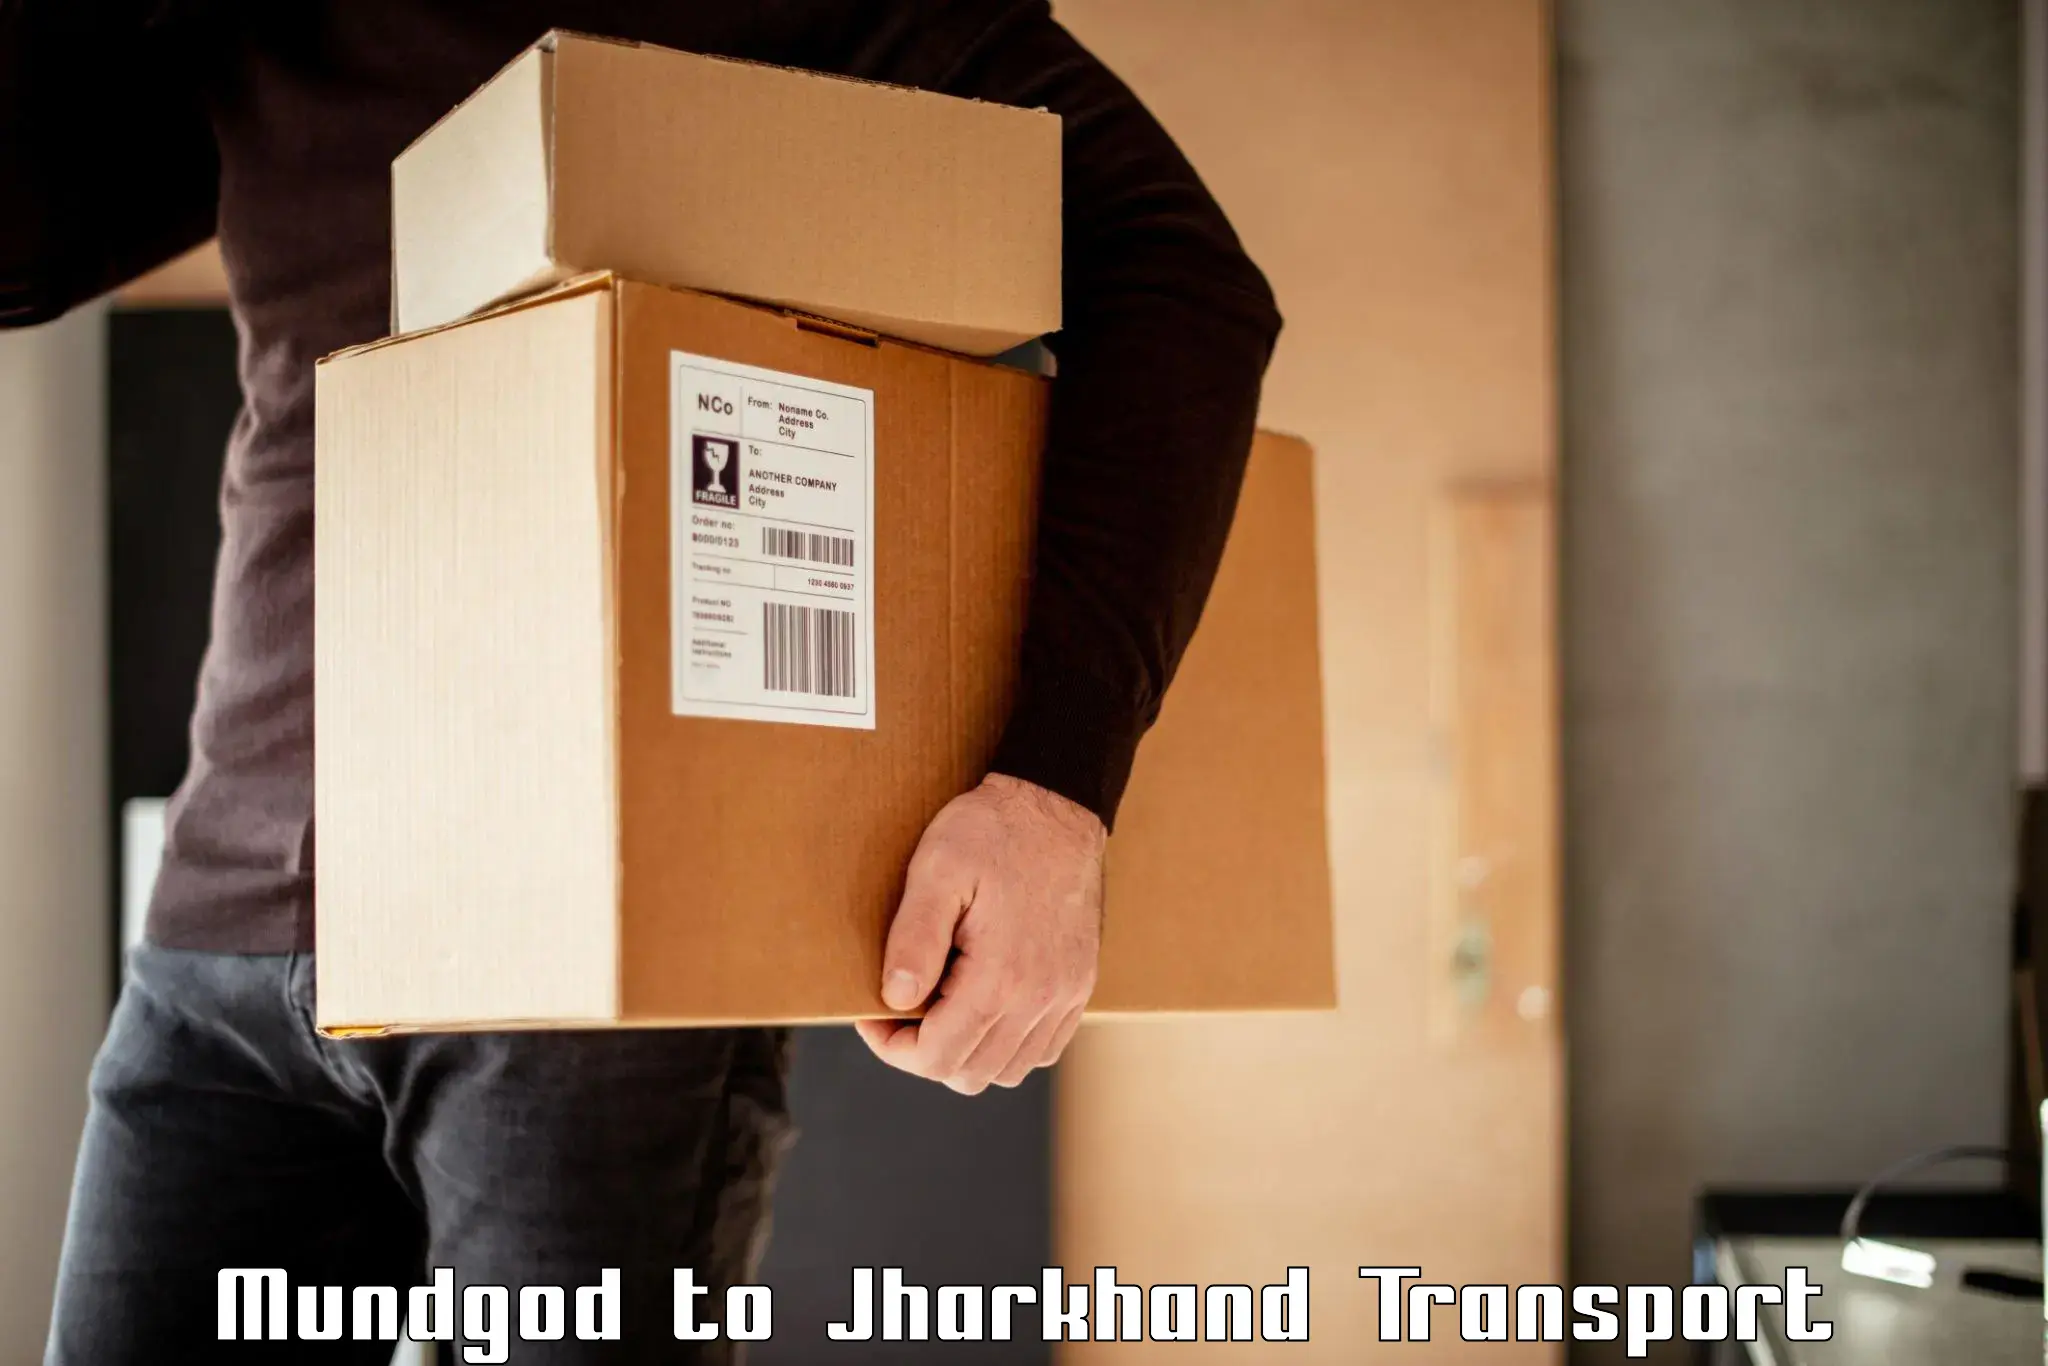 Shipping partner Mundgod to IIIT Ranchi